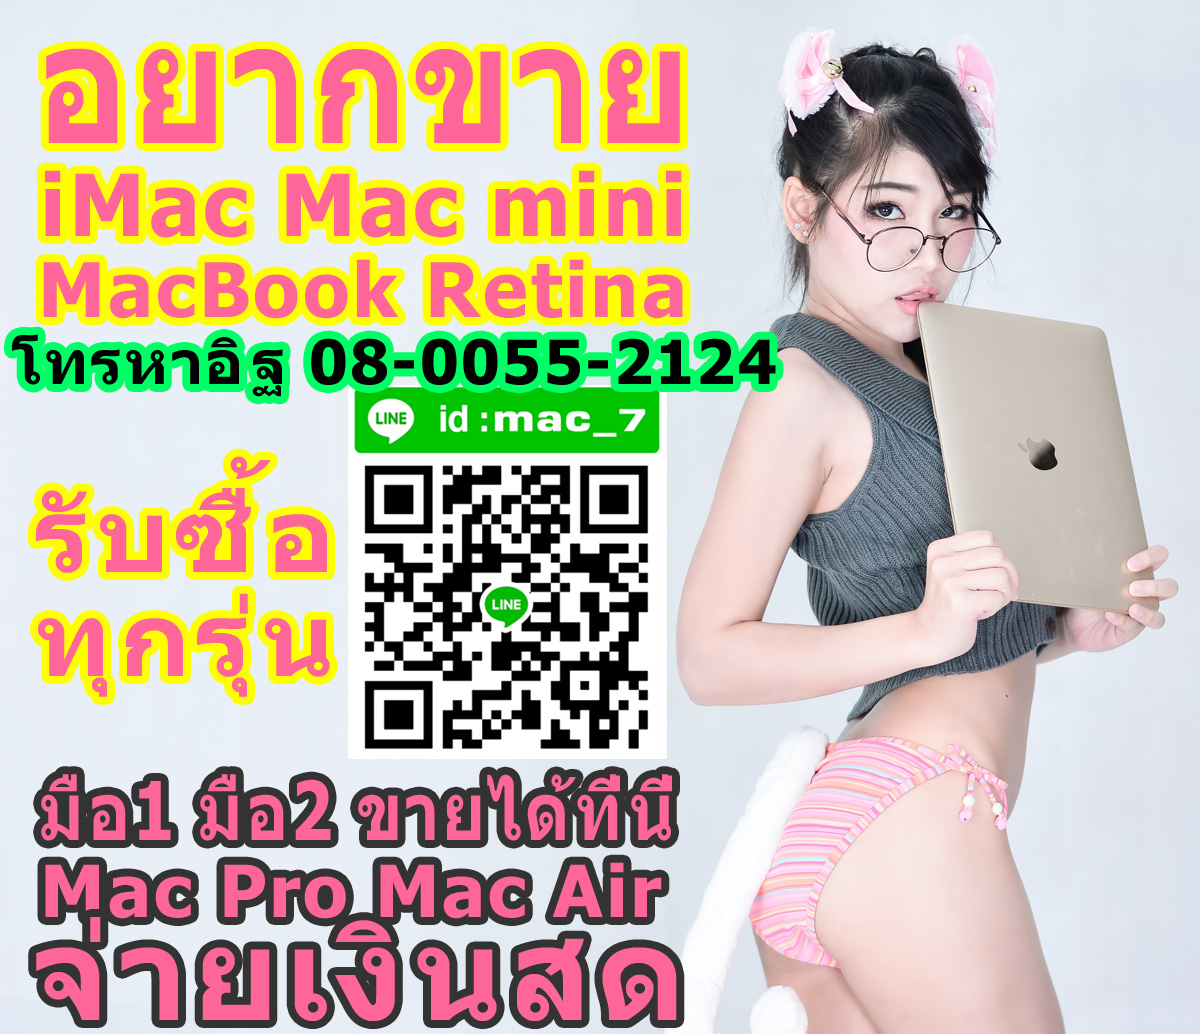 MacBook iMac ฟัง เสีย เปิดไม่ติด ขายได้ รับซื้อ ราคาดี ติดต่อเรา 080-055-2124 อิฐ Add Line mac_7 รูปที่ 1